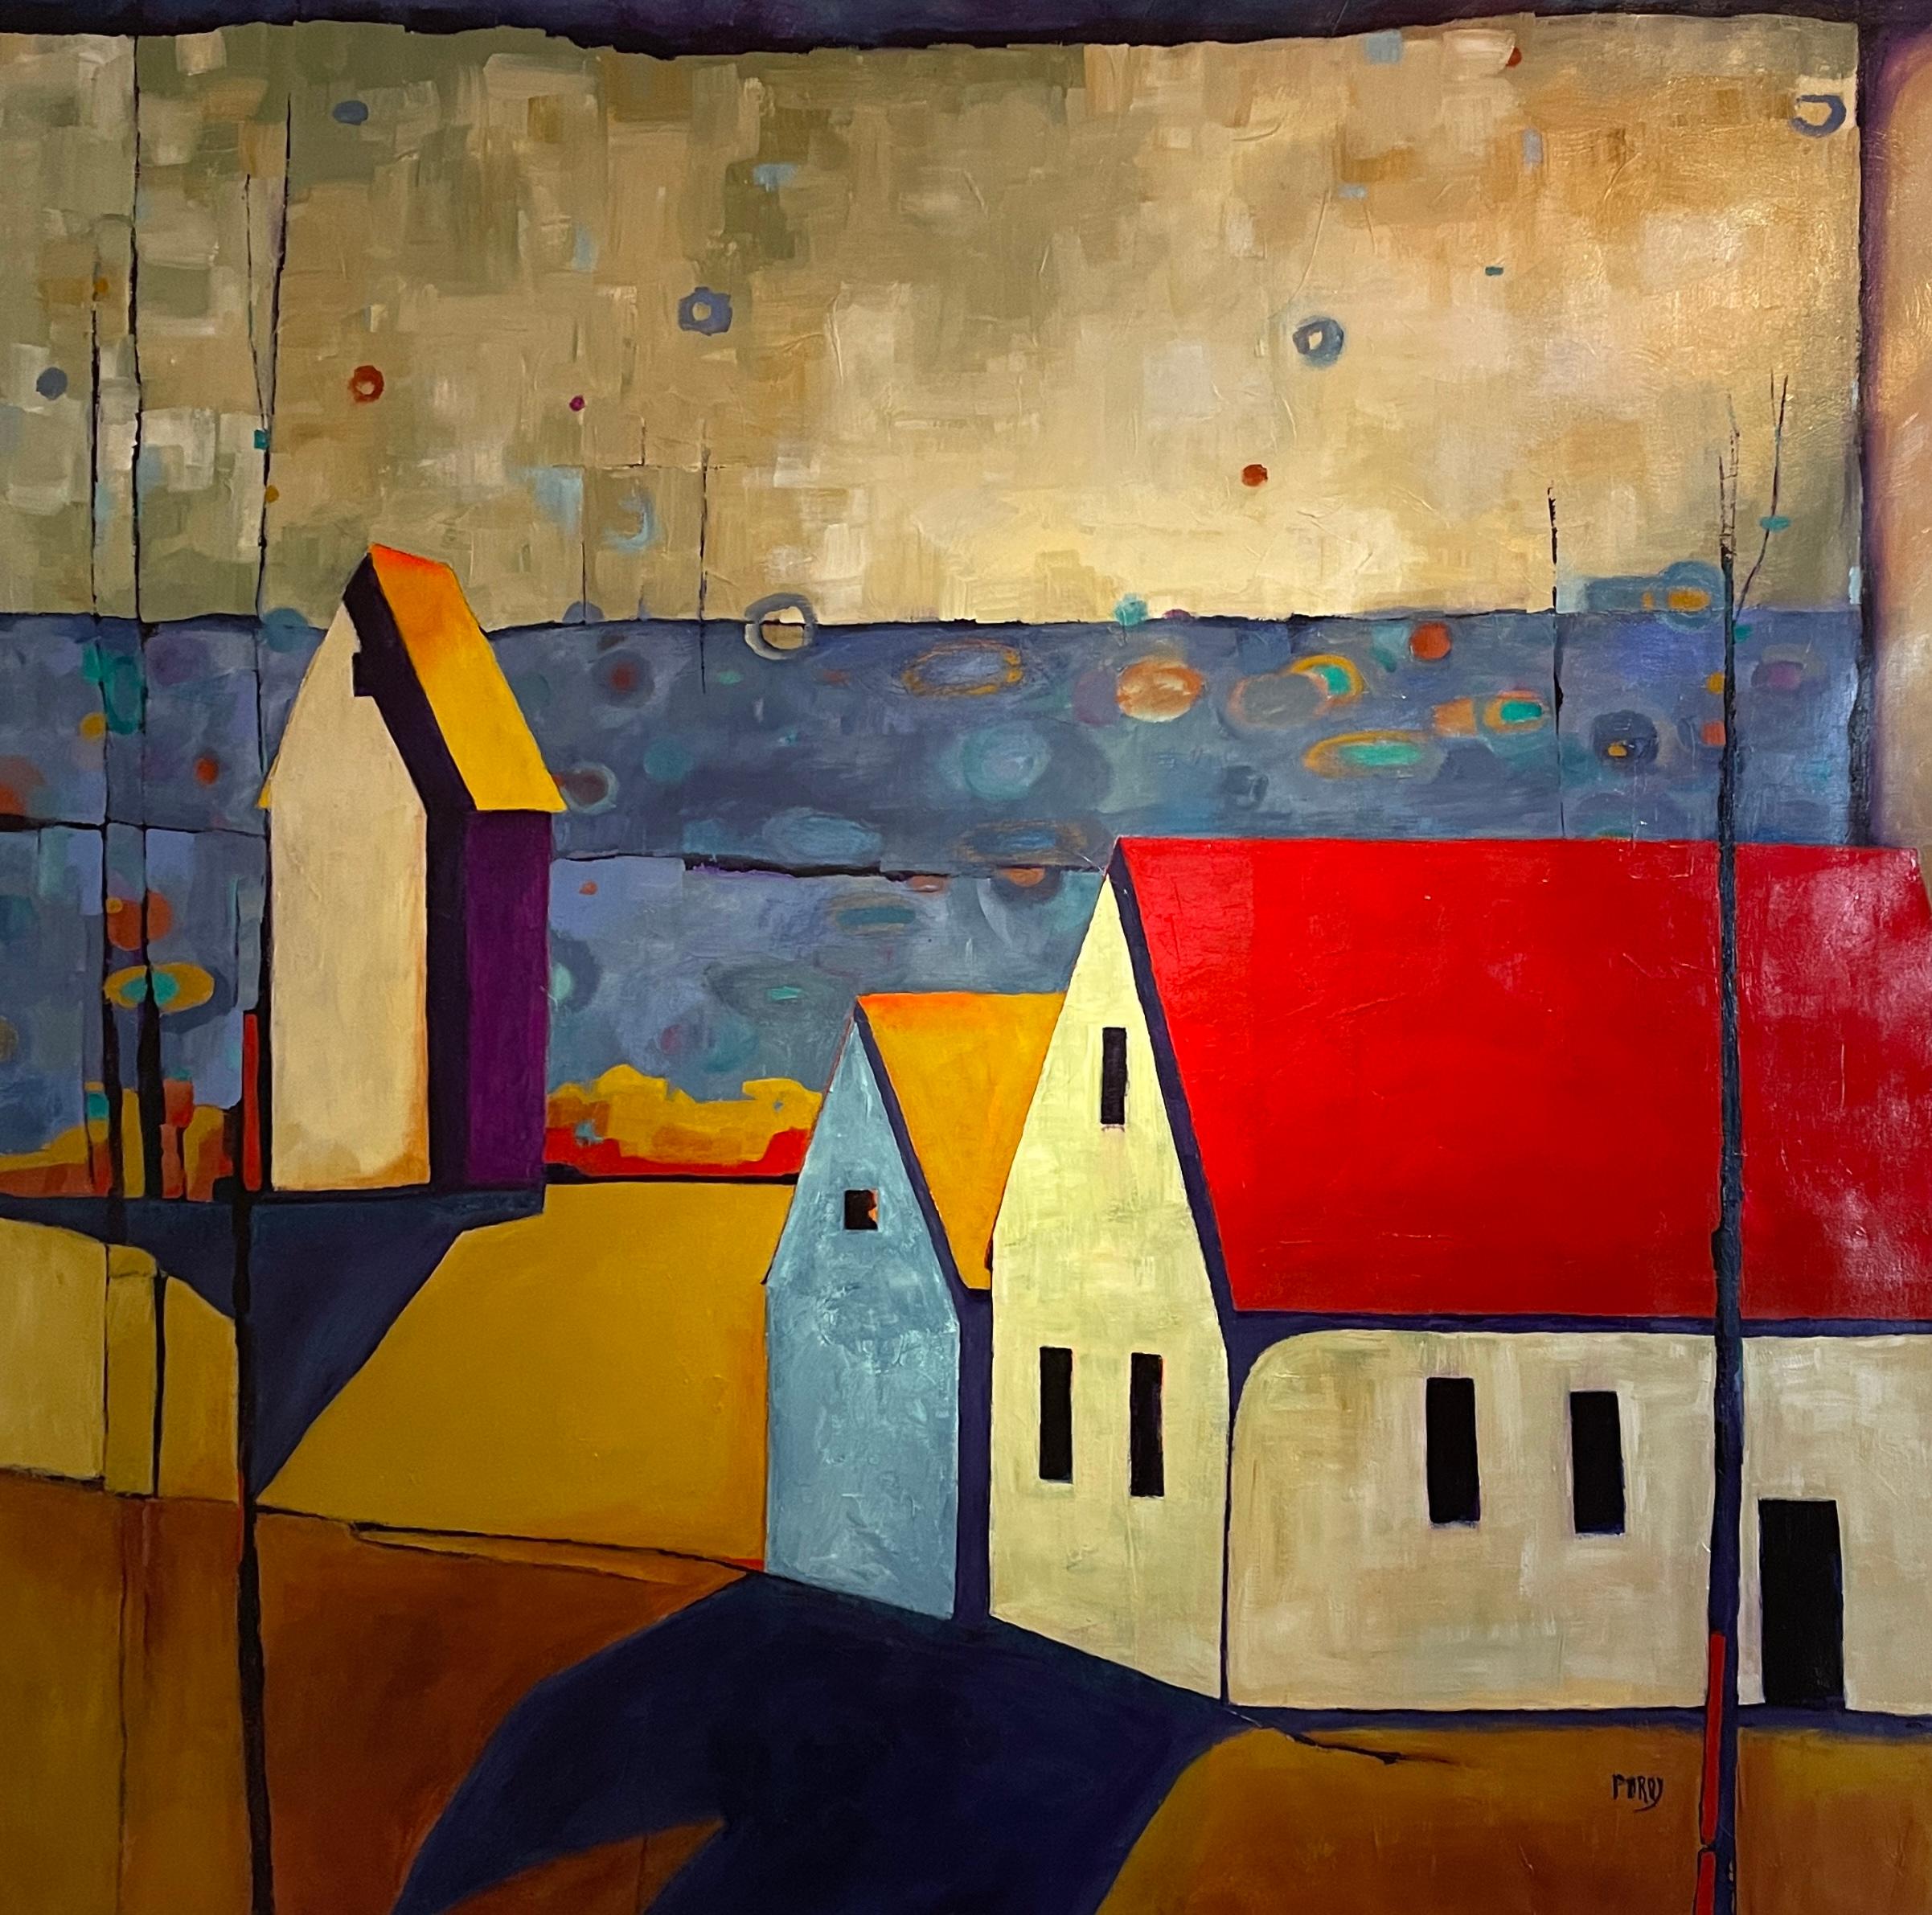 'Twilight Vista', paysage de huttes sereines au milieu d'un ciel abstrait par Maria Poroy